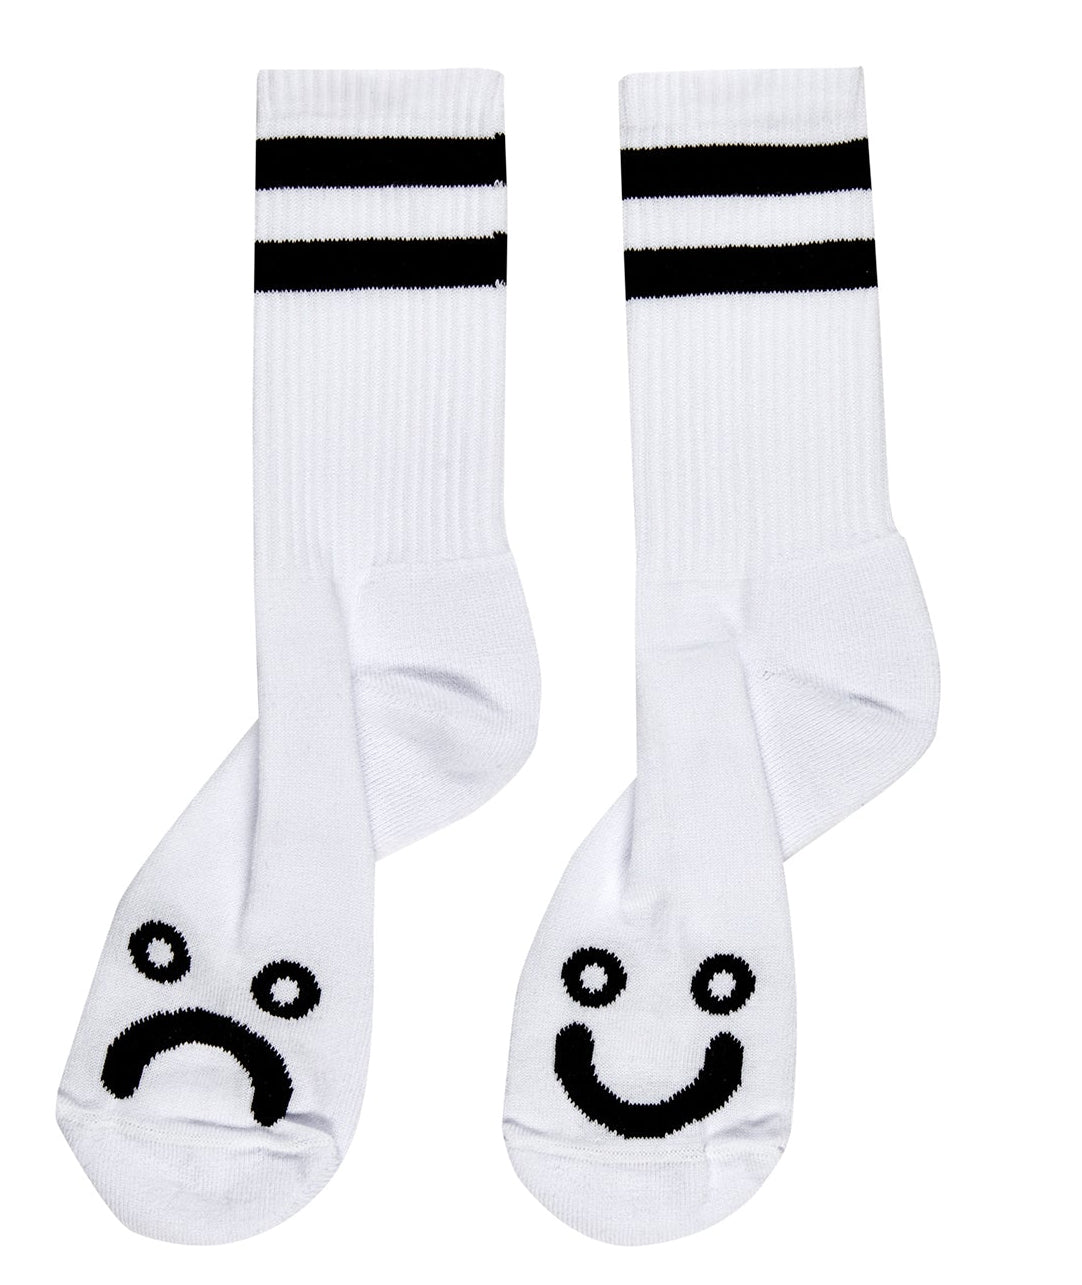 Polar Skate Happy Sad Socks White